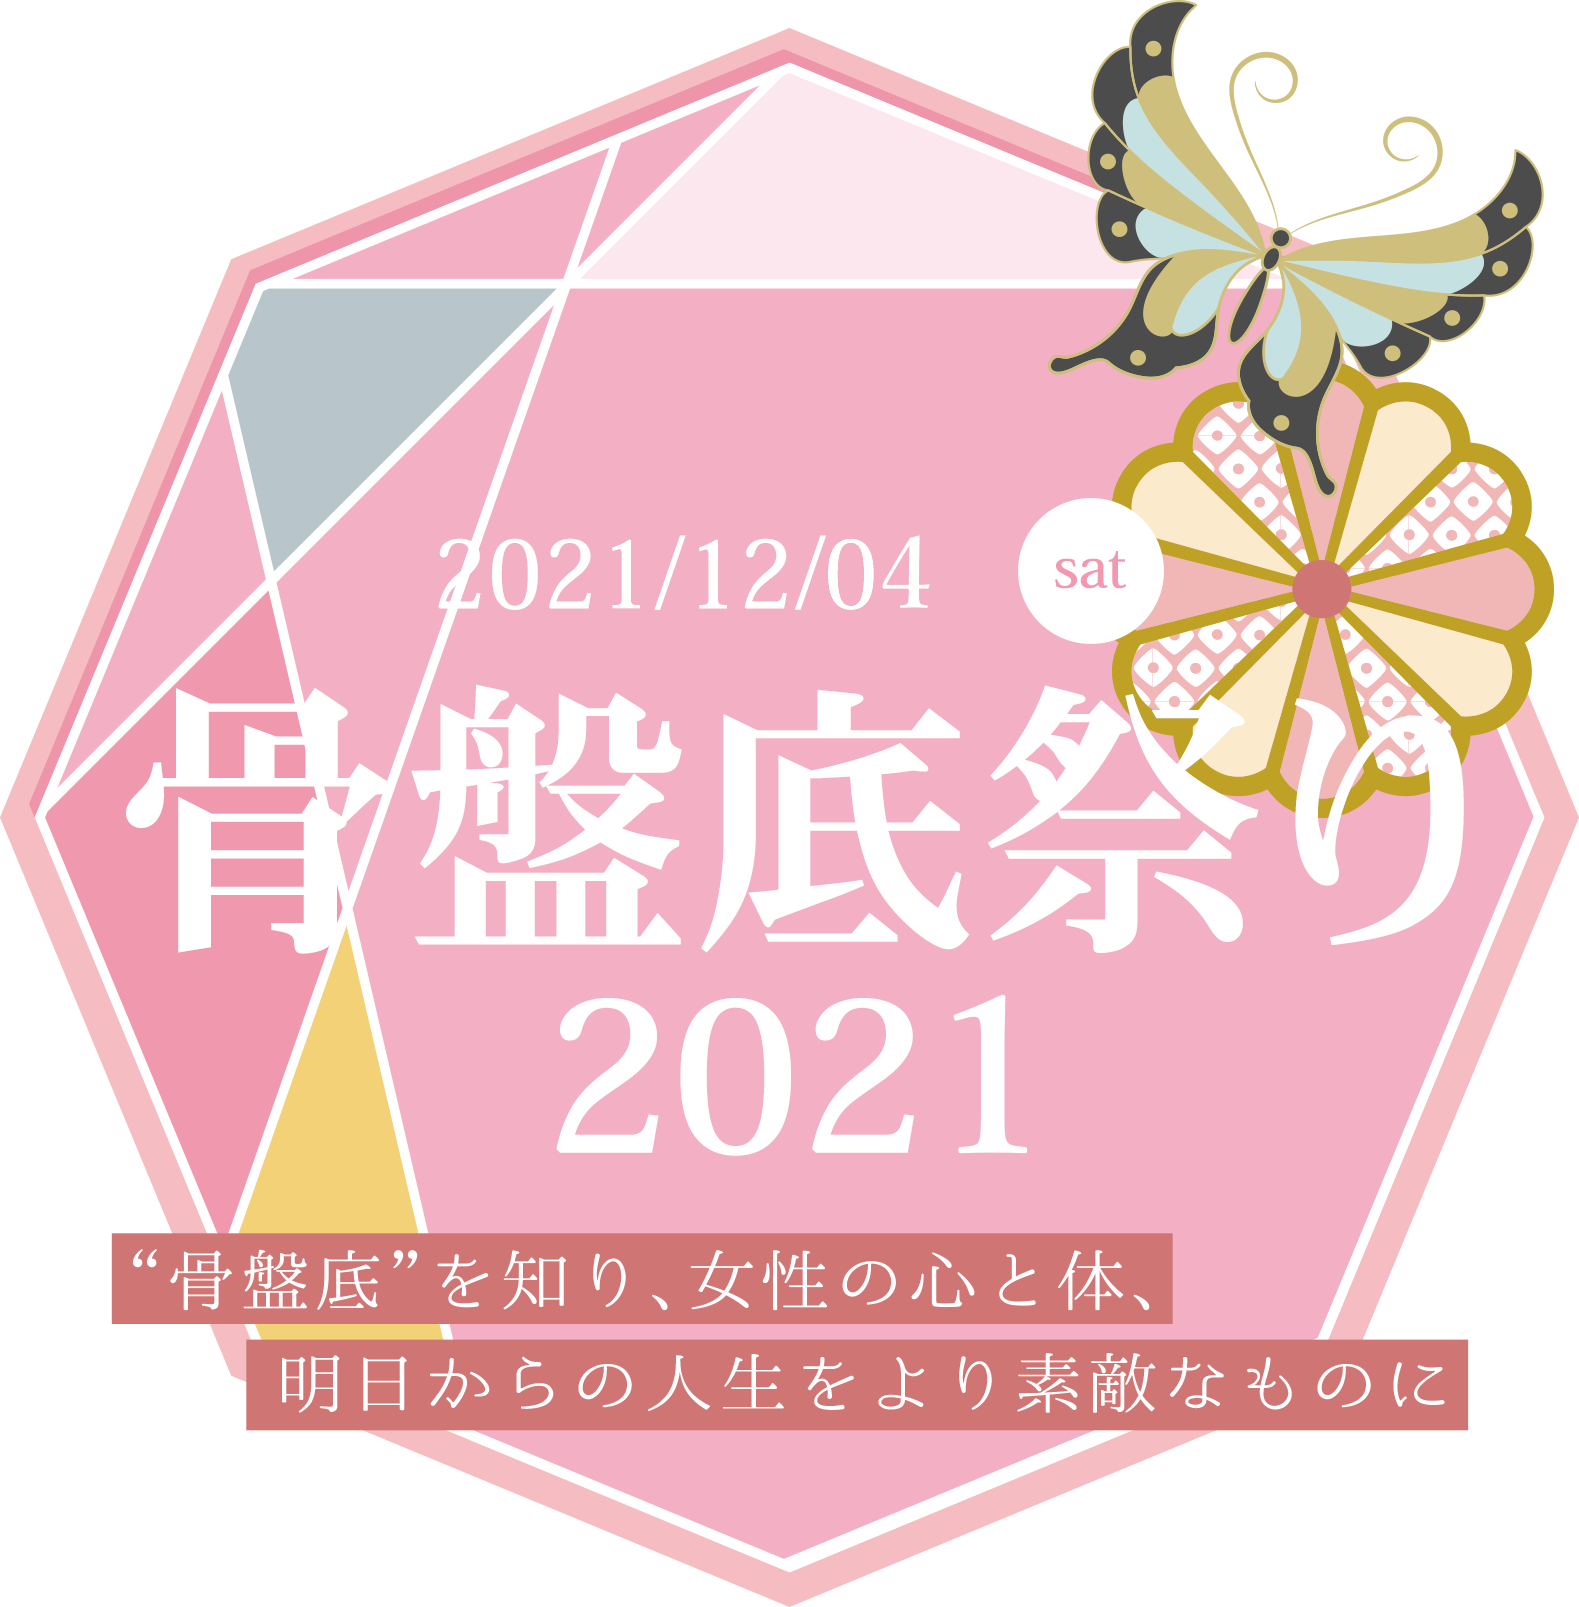 HPCI広報サイト「⾻盤底祭り2021」